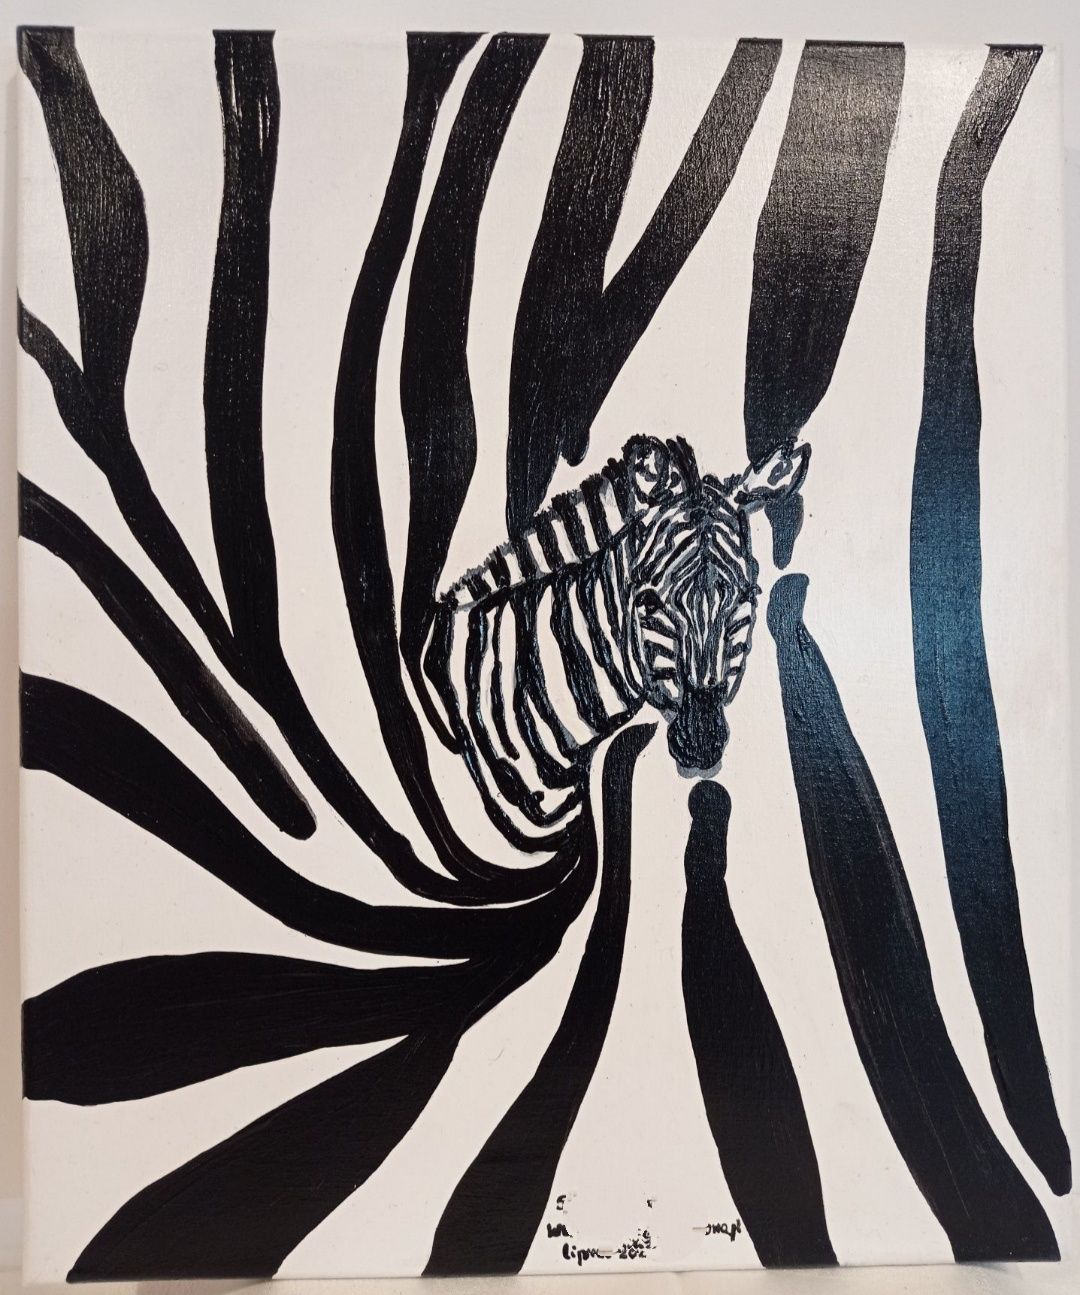 Zebra na płótnie. Wymiar 42 36

Zebra na płótnie. Wymiar 42 36